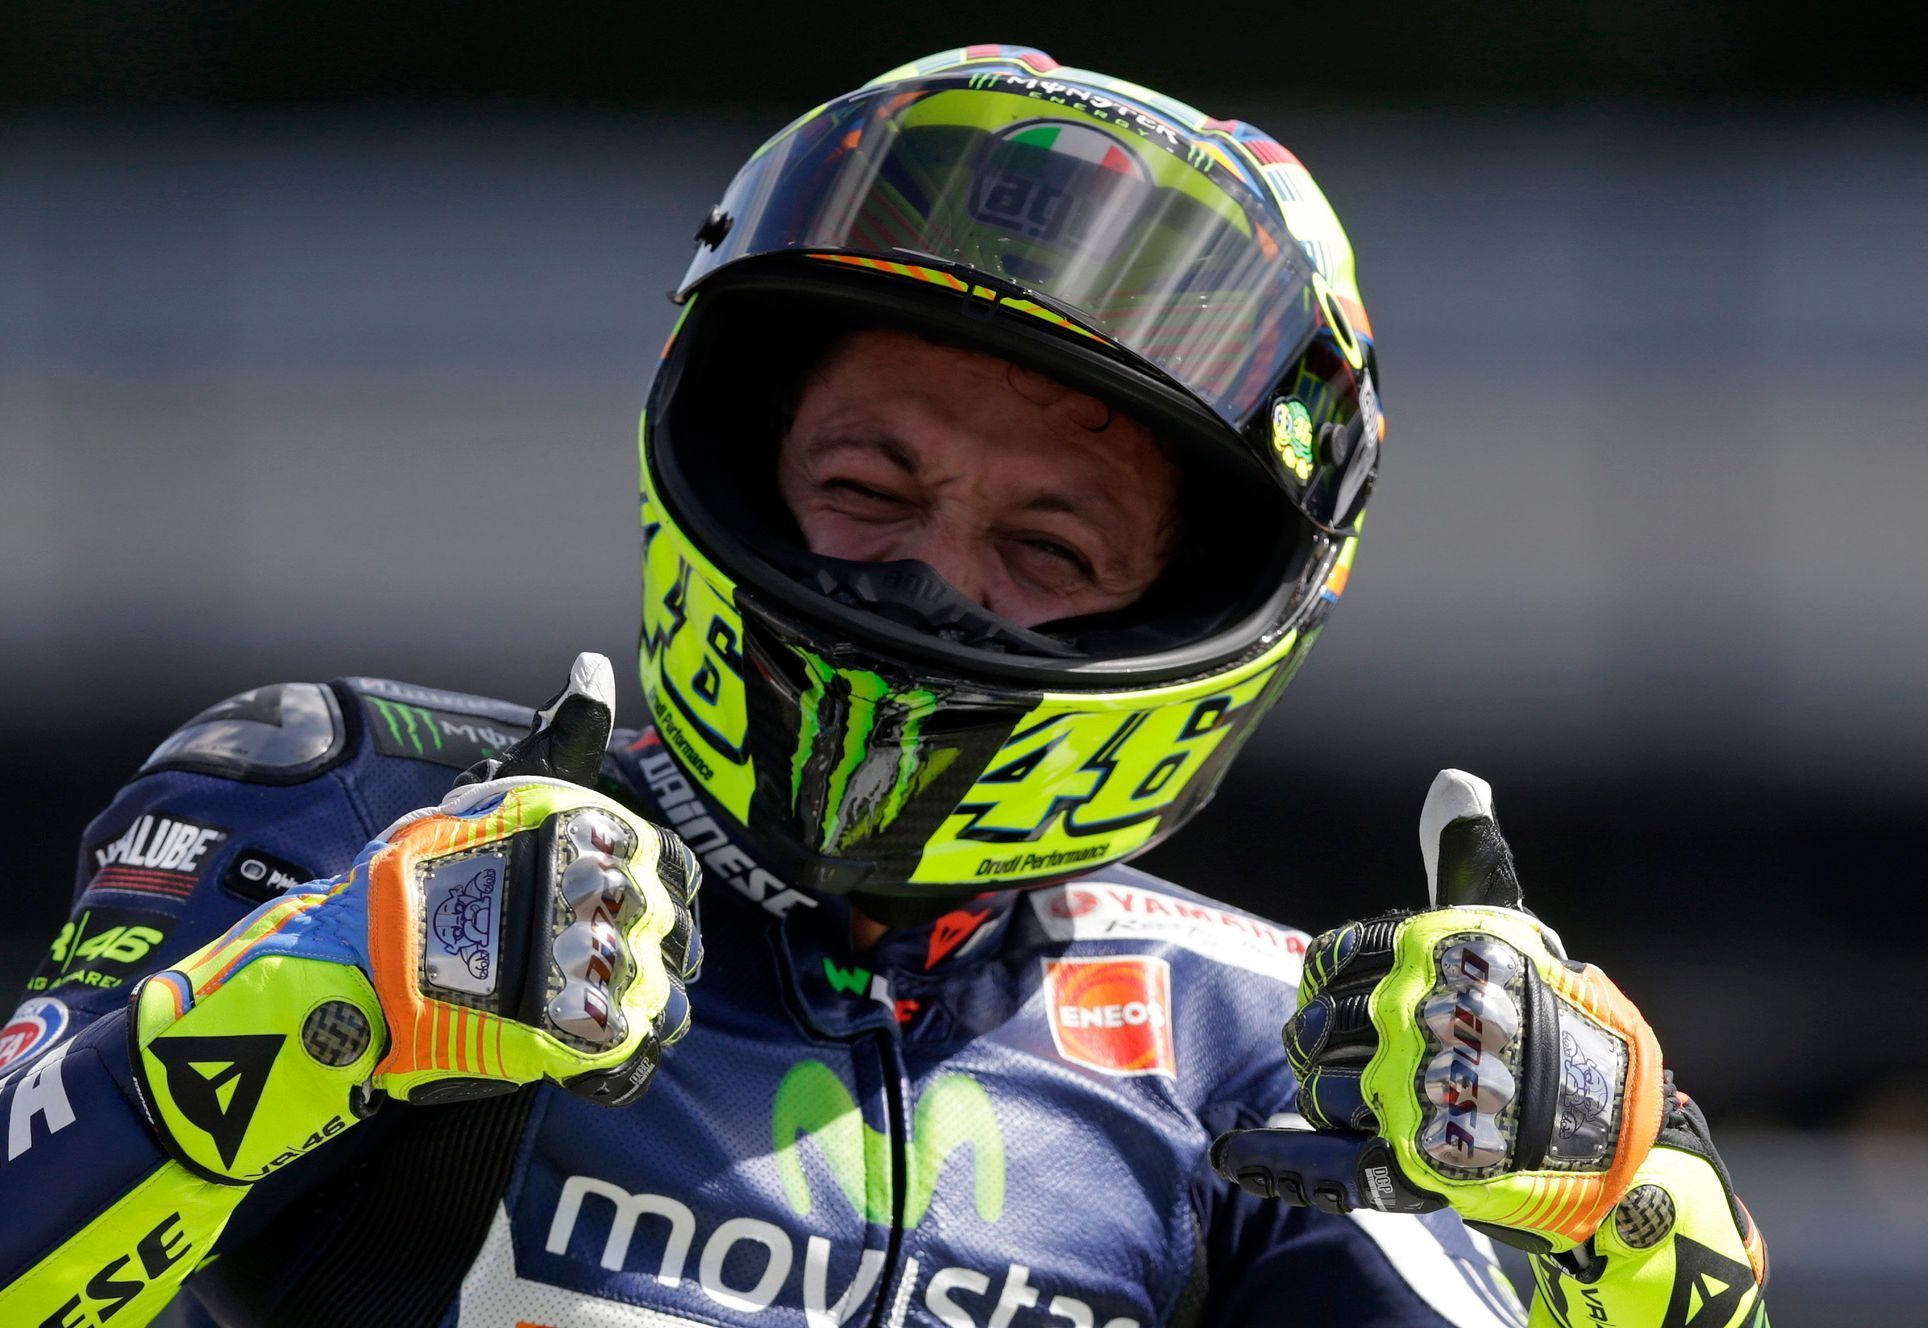 VC České republiky 2014, MotoGP: Valentino Rossi, Yamaha